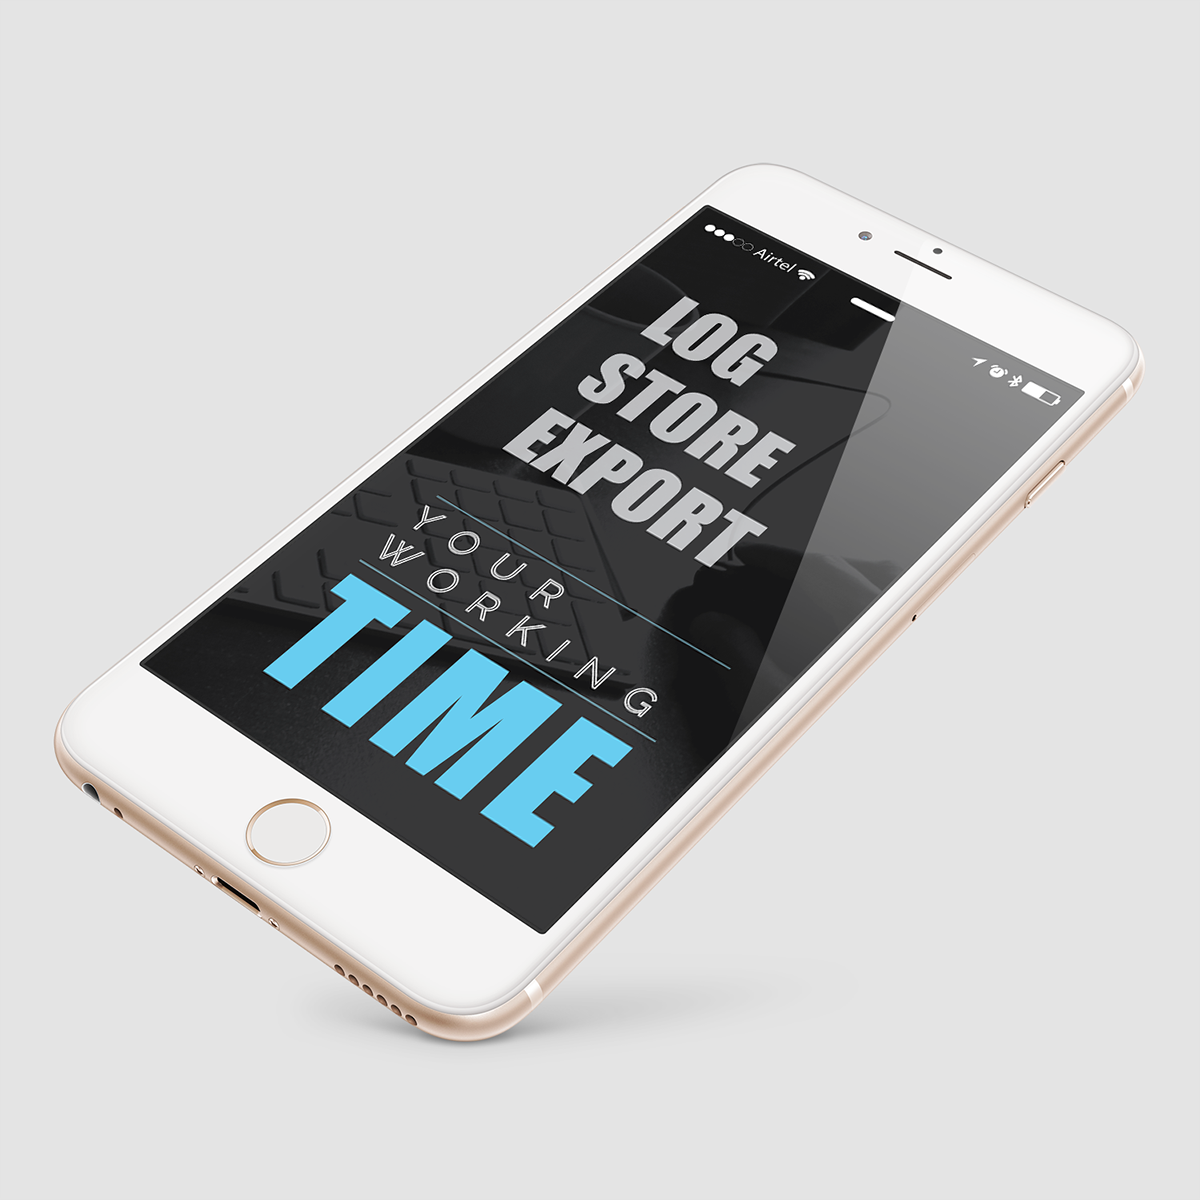 iphone-app-ui iphone-development iOS-App iOS-app-design UI ux iphone-ux